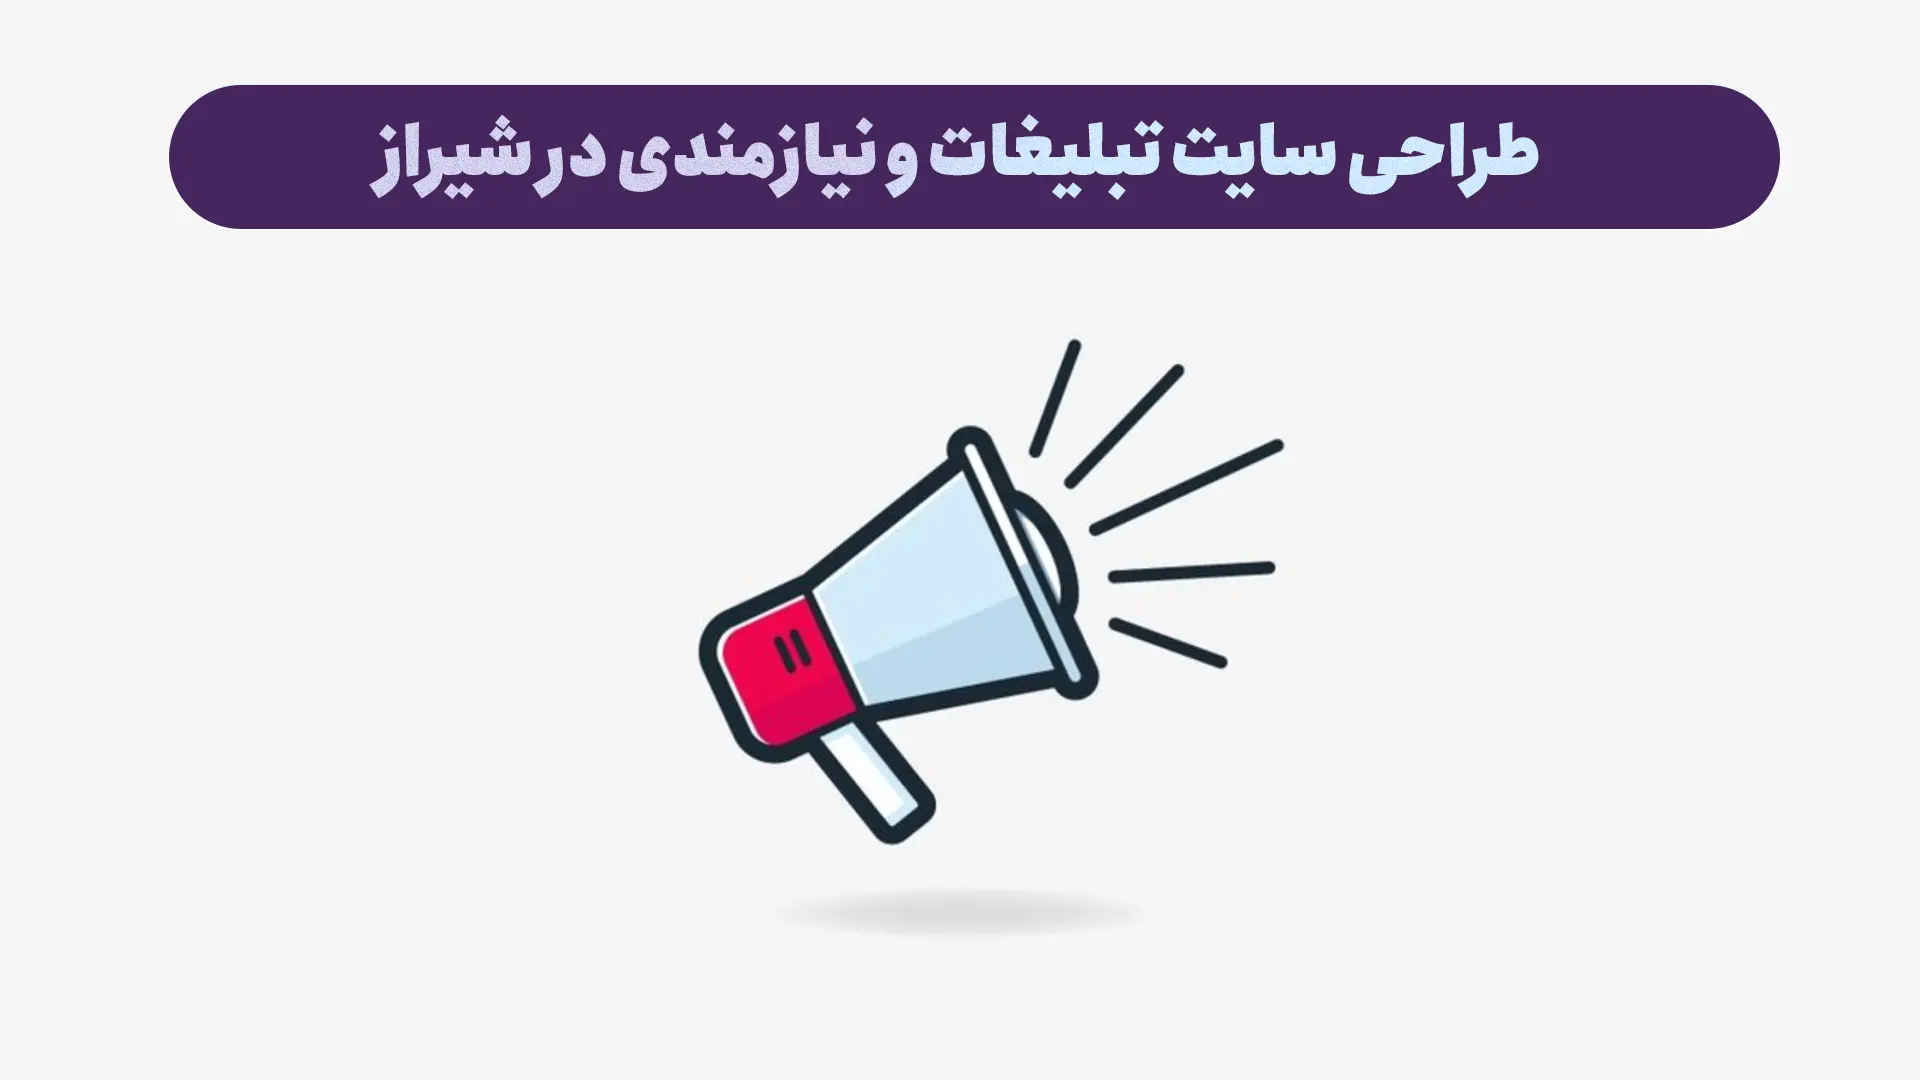 طراحی سایت تبلیغات و نیازمندی در شیراز